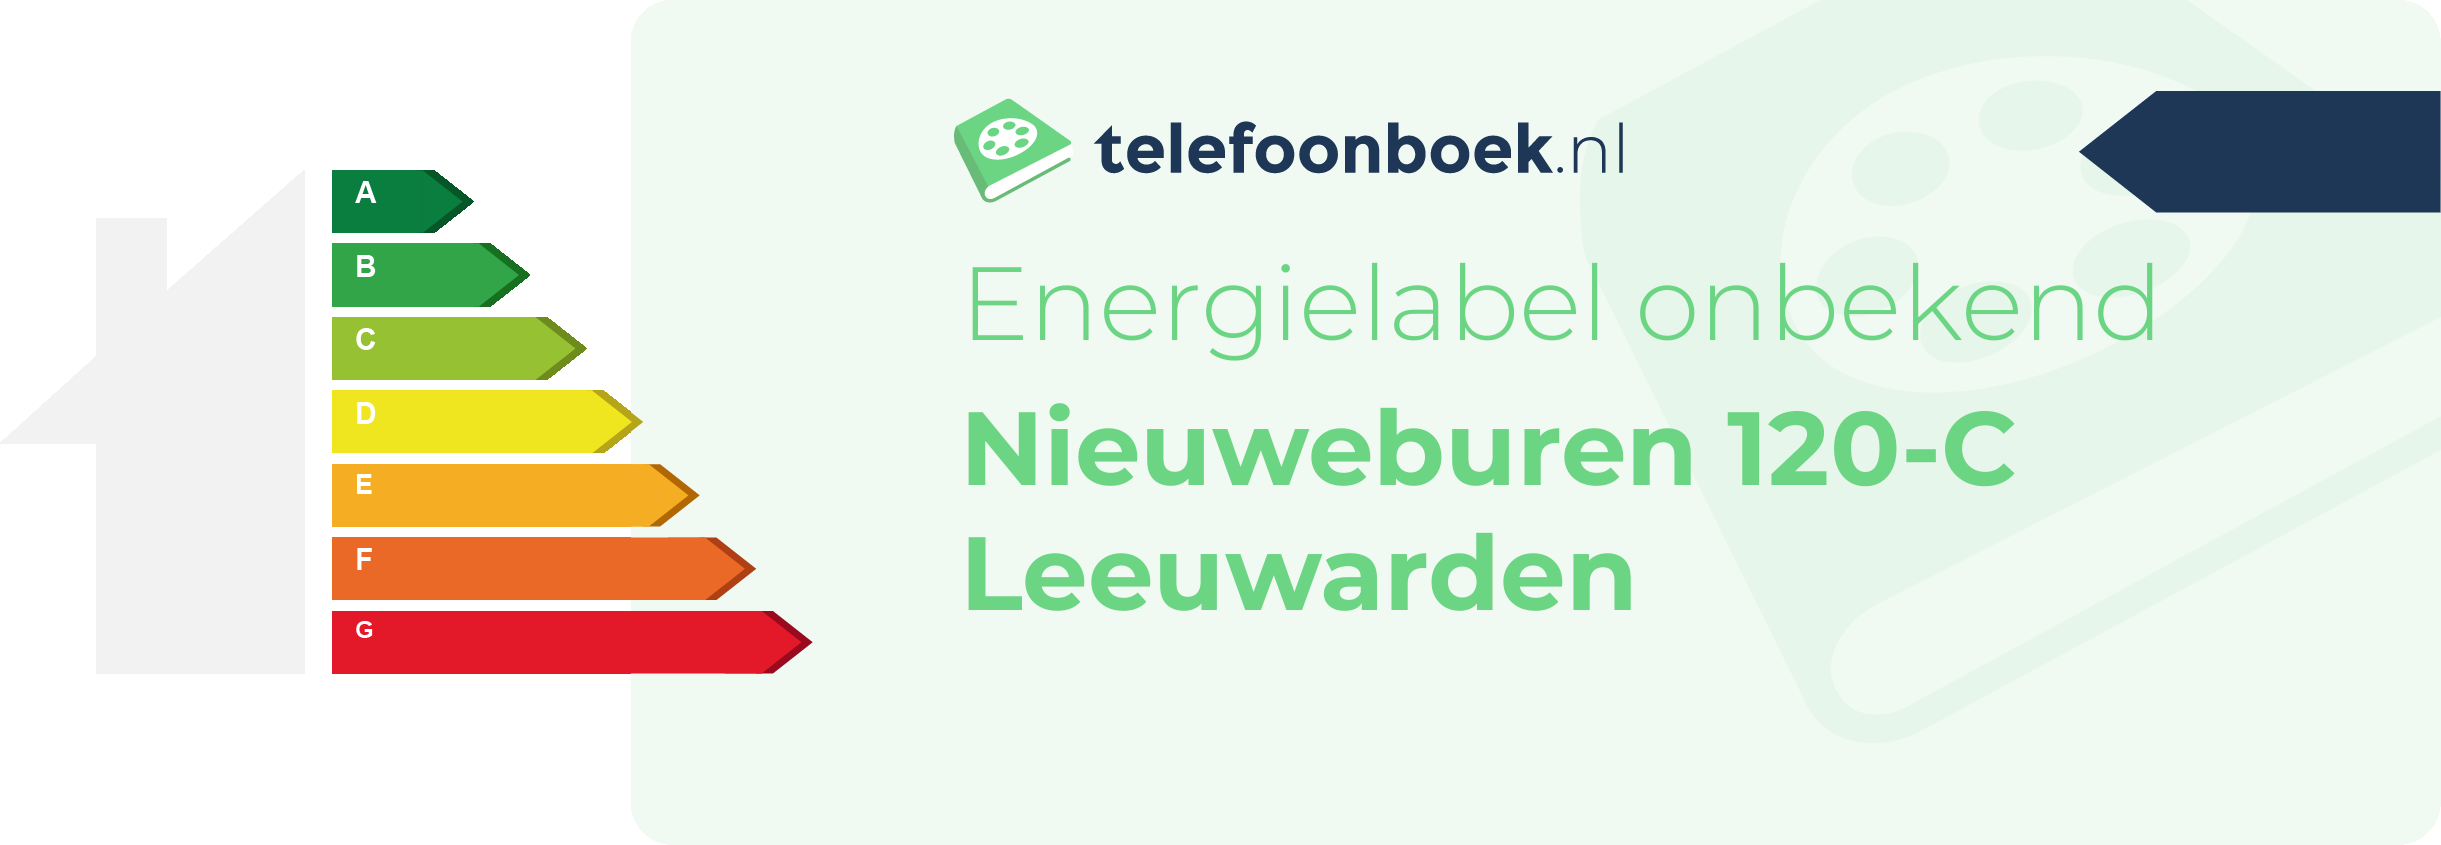 Energielabel Nieuweburen 120-C Leeuwarden